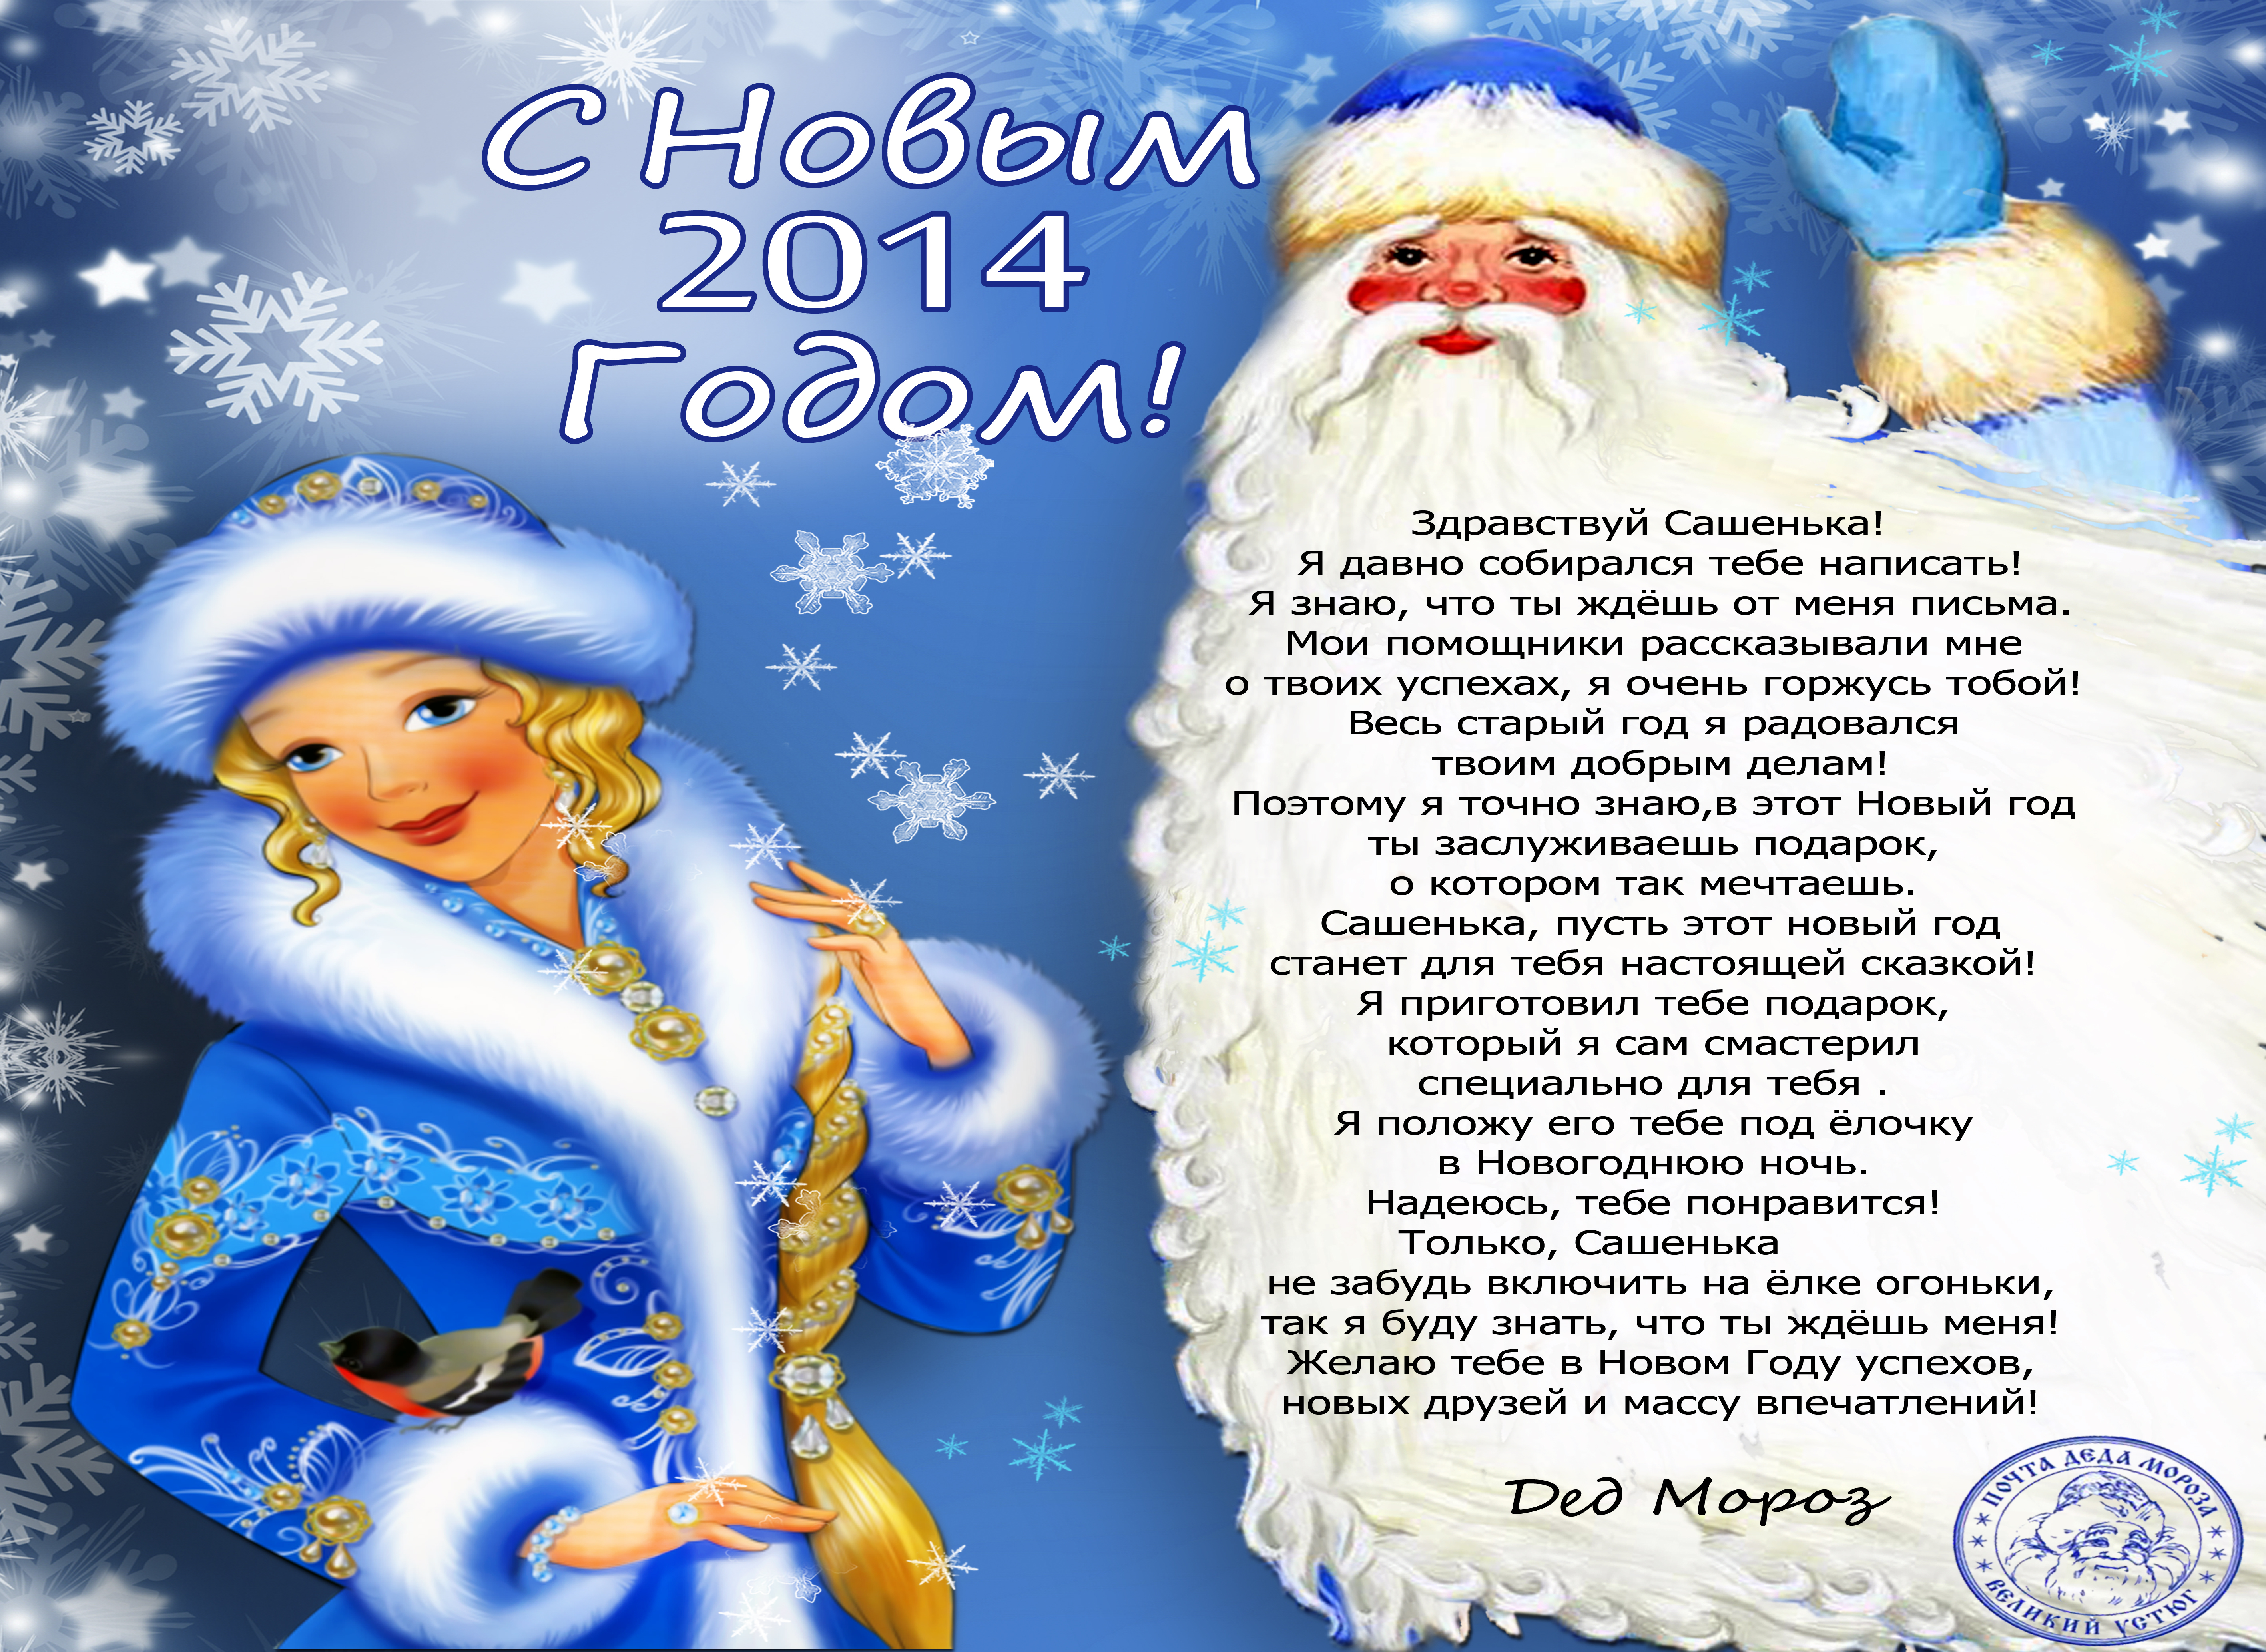 Стих Поздравление Деду Морозу